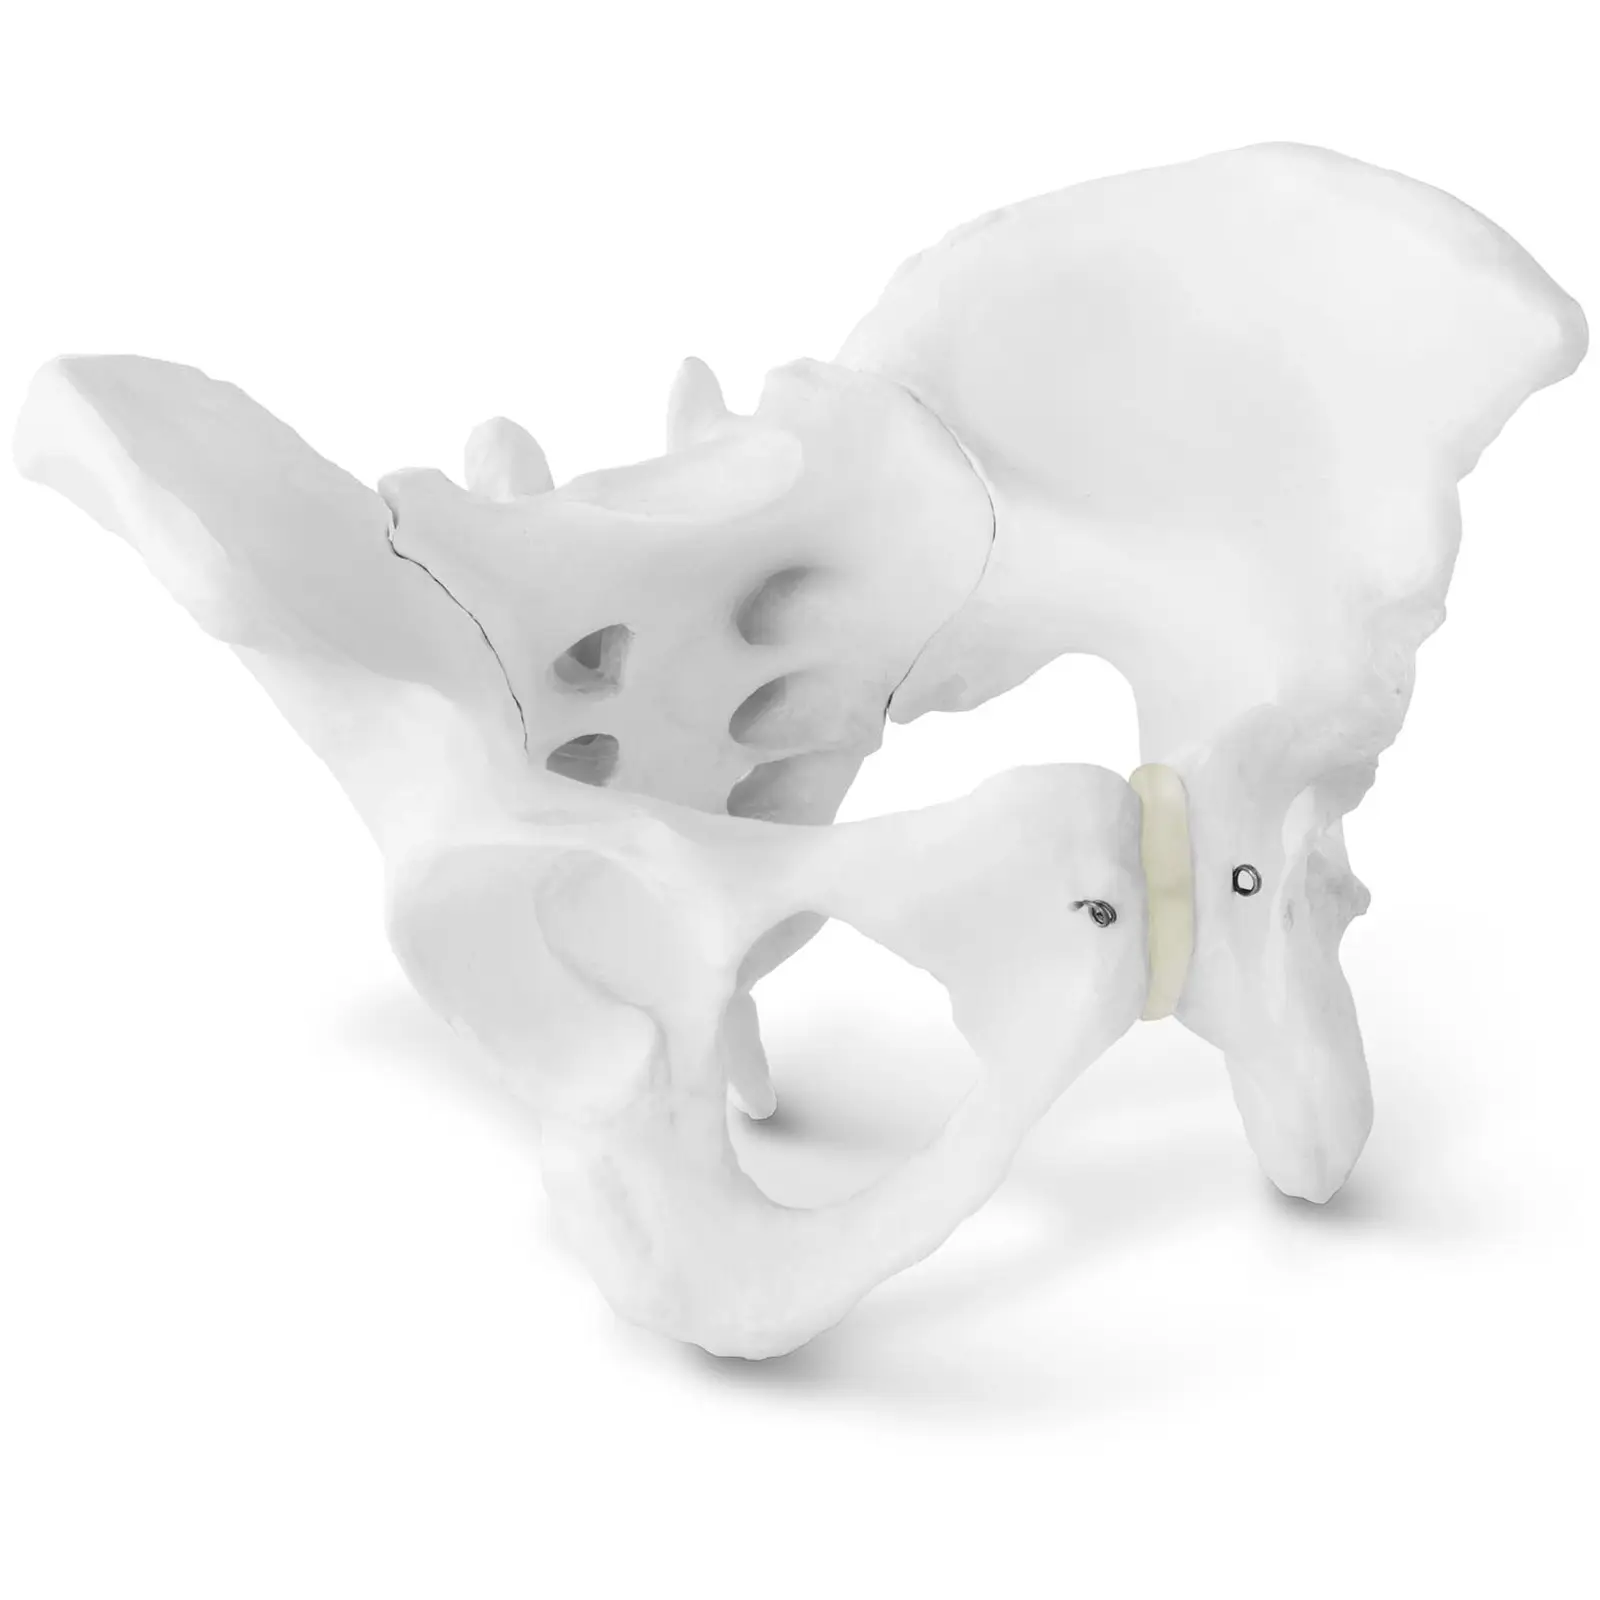 Skelett Becken-Modell - weiblich